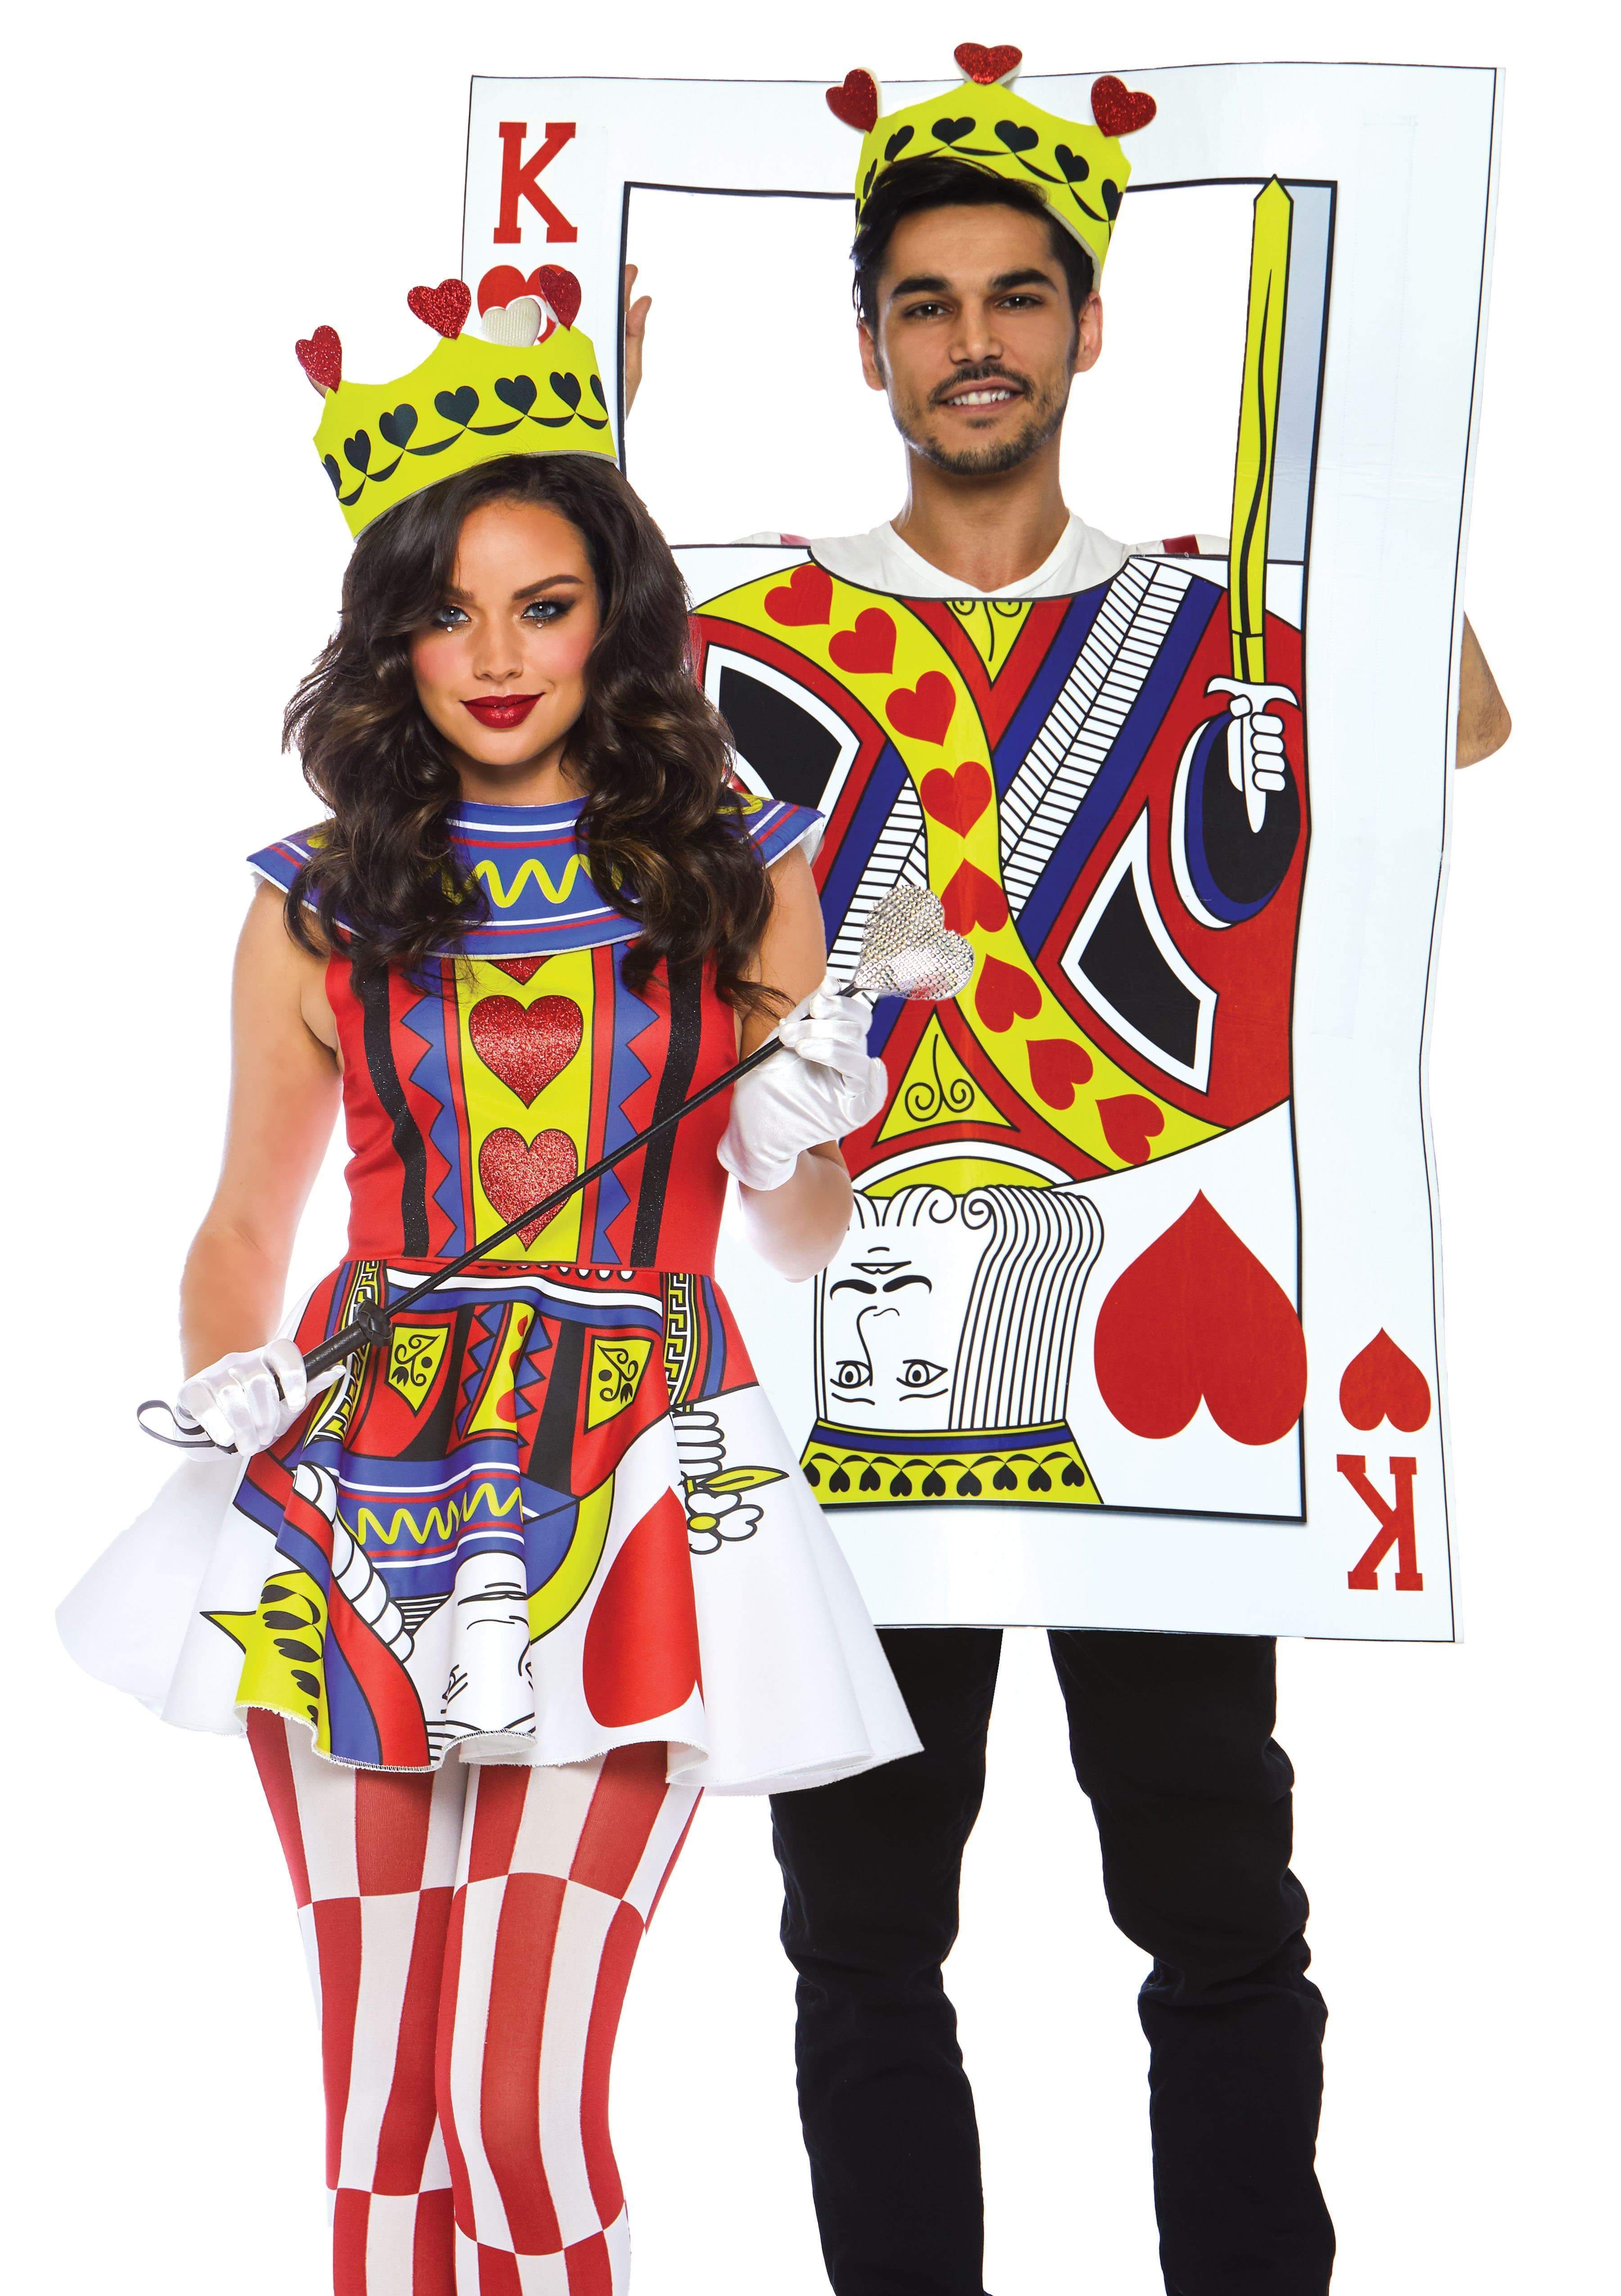 Card Queen Costume